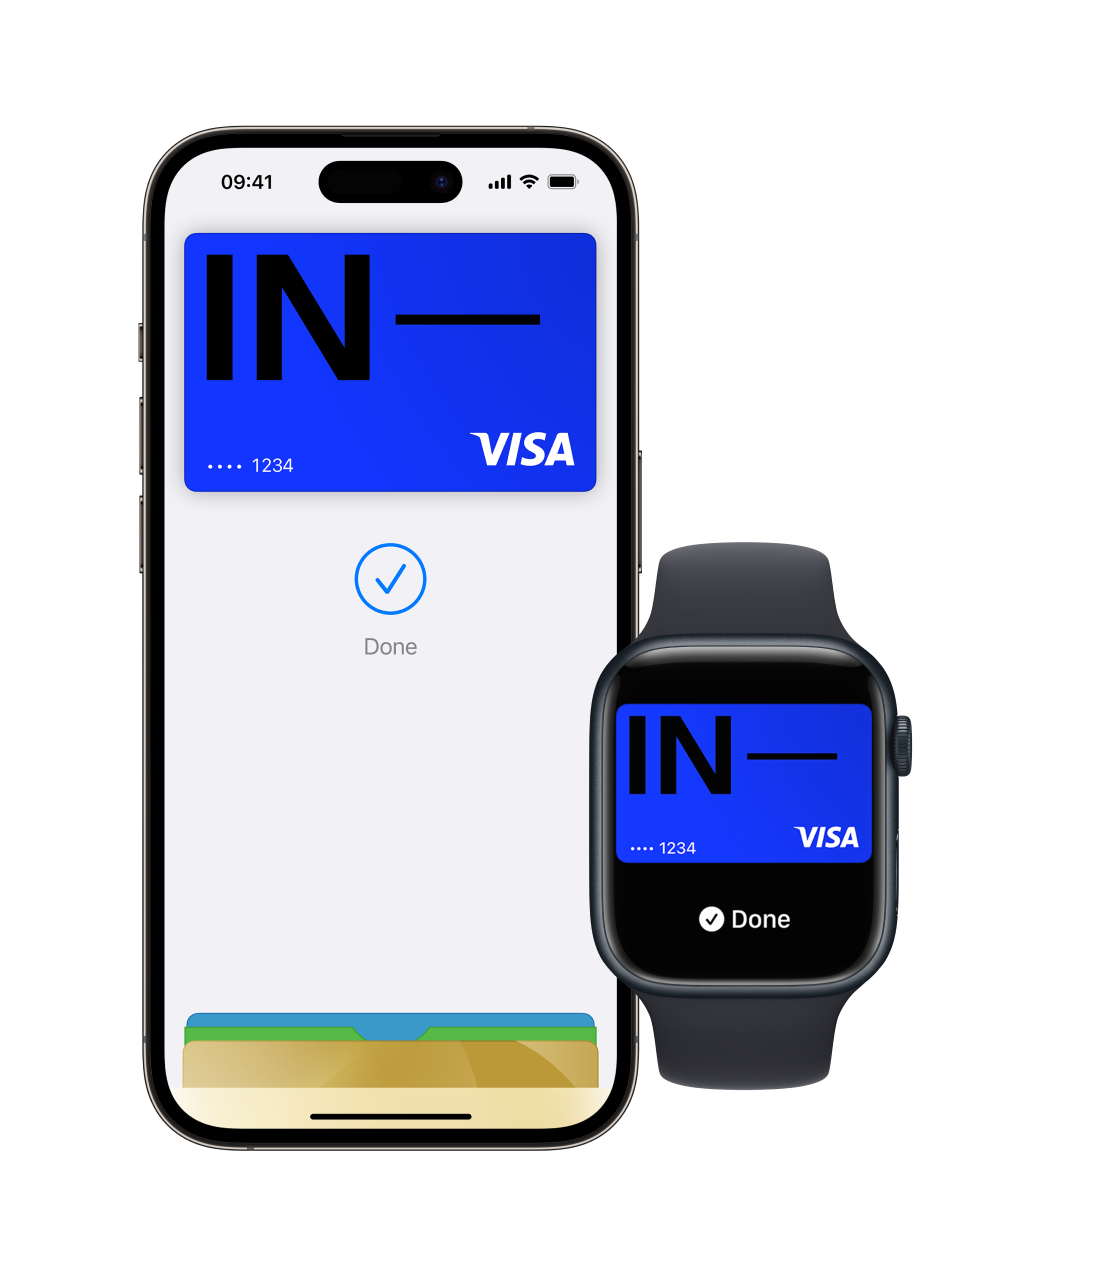 Imagen de un iPhone y un Apple Watch que muestran la aplicación Apple Wallet y varias tarjetas con la tarjeta Incharge colocada en la parte superior. Esta imagen muestra la función Apple Pay con funcionalidad de billetera digital.